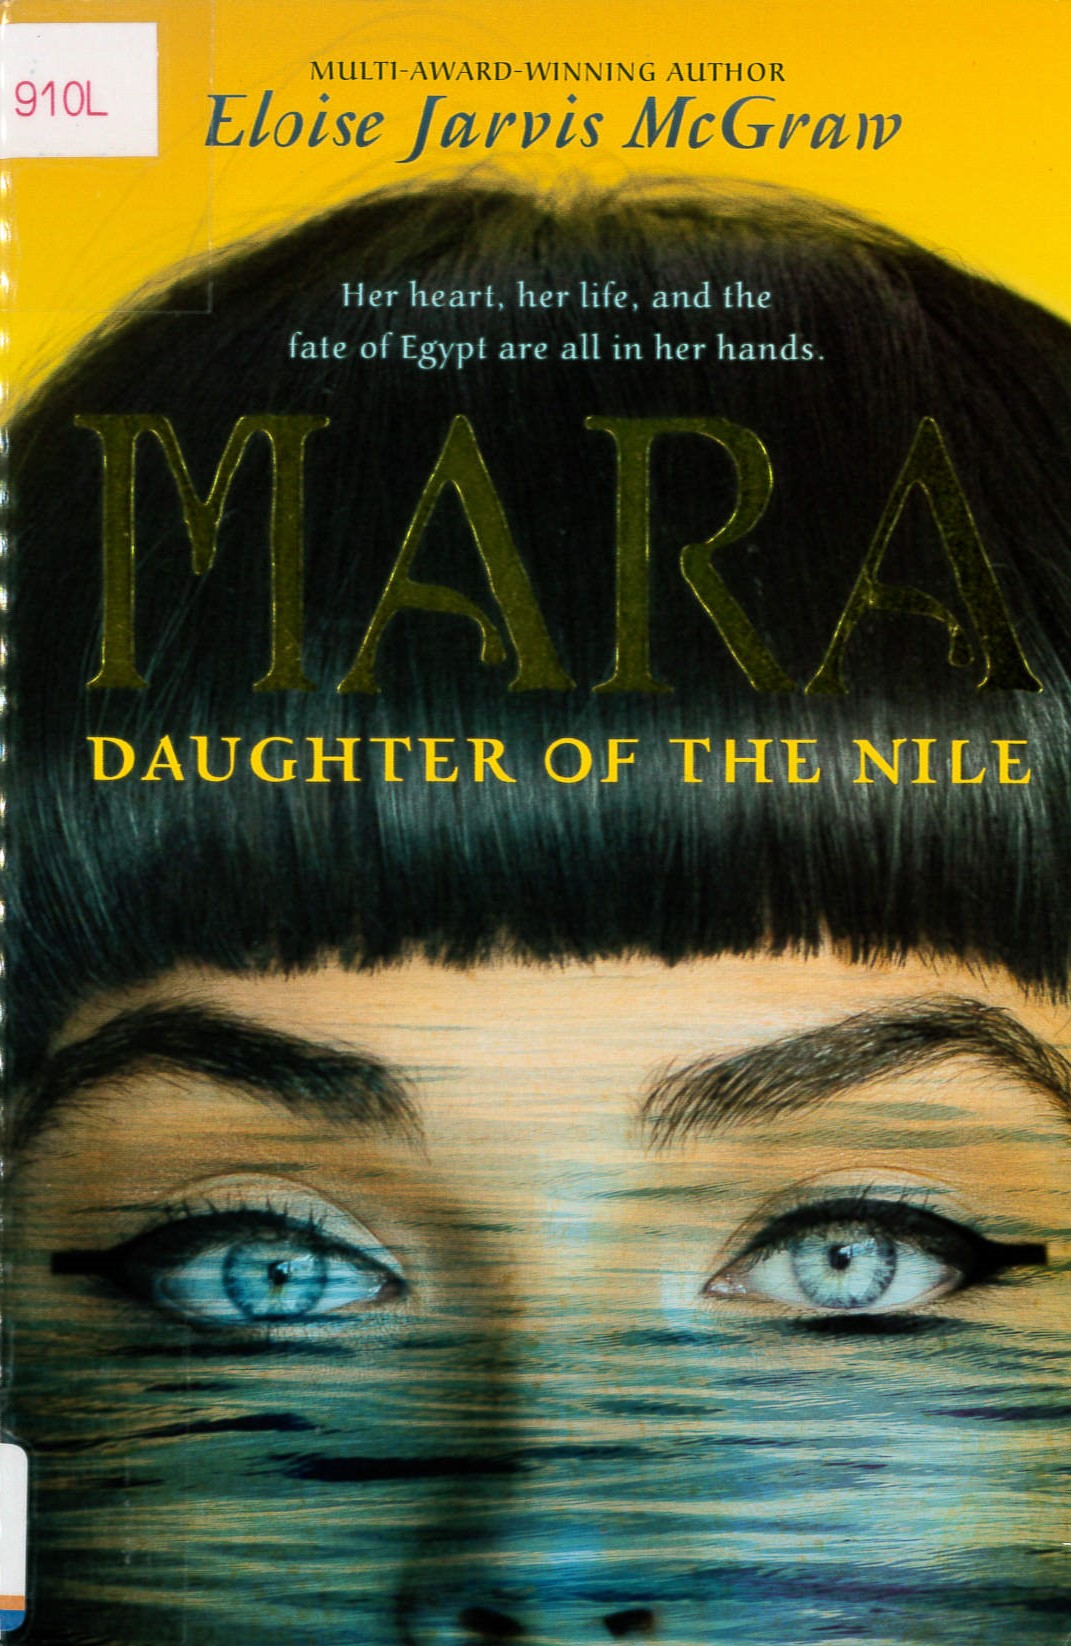 Mara, daughter of the Nile /